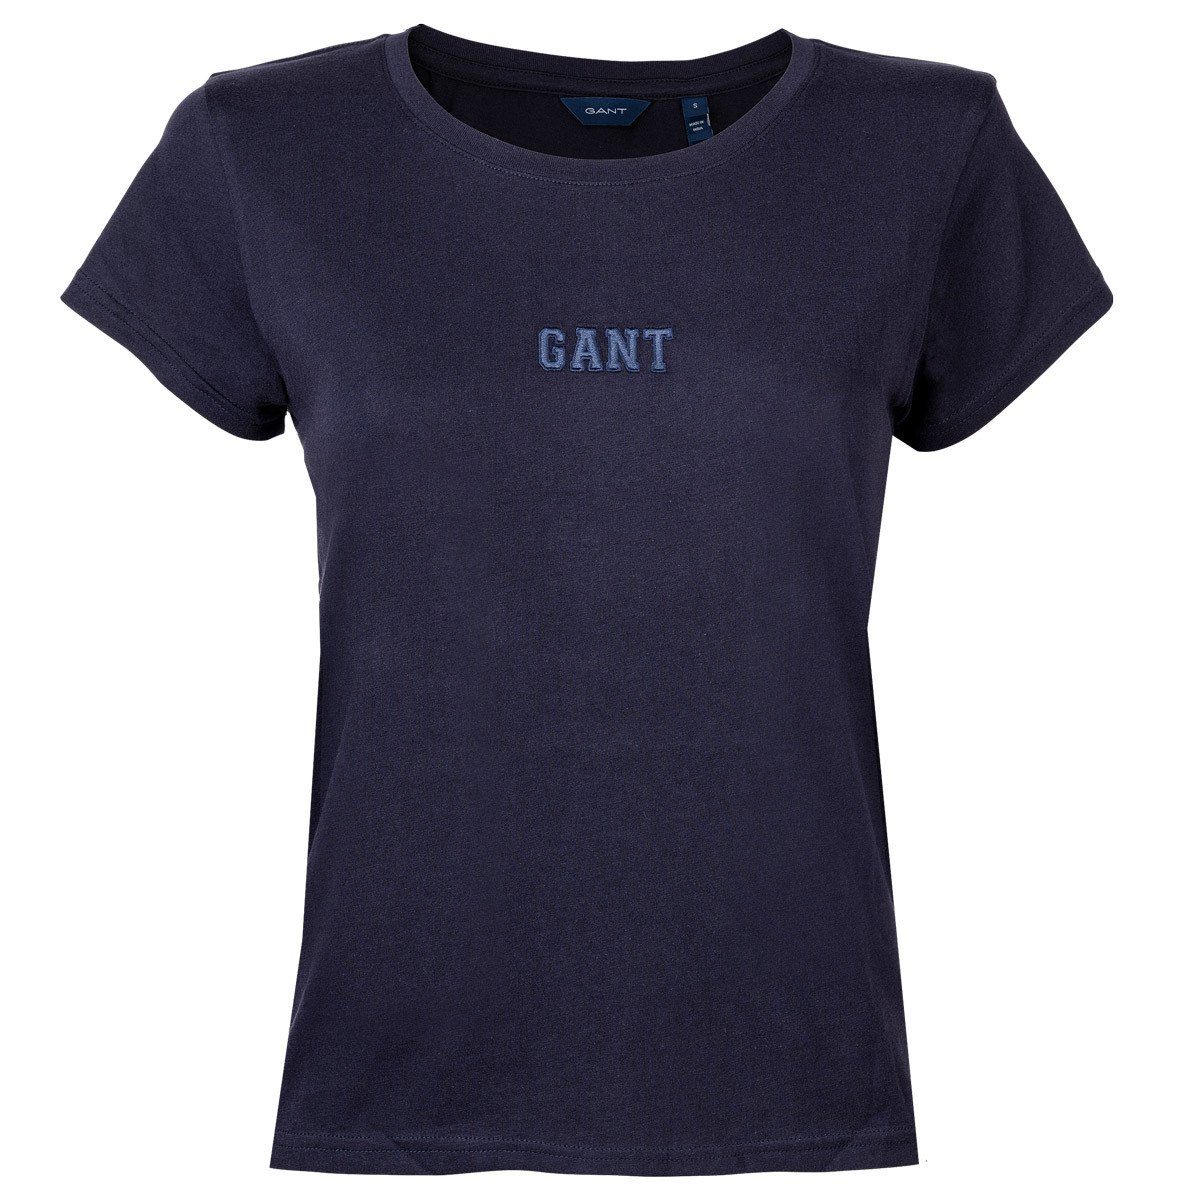 Gant T-Shirt Damen T-Shirt - D1. Gant Logo T-Shirt, Rundhals